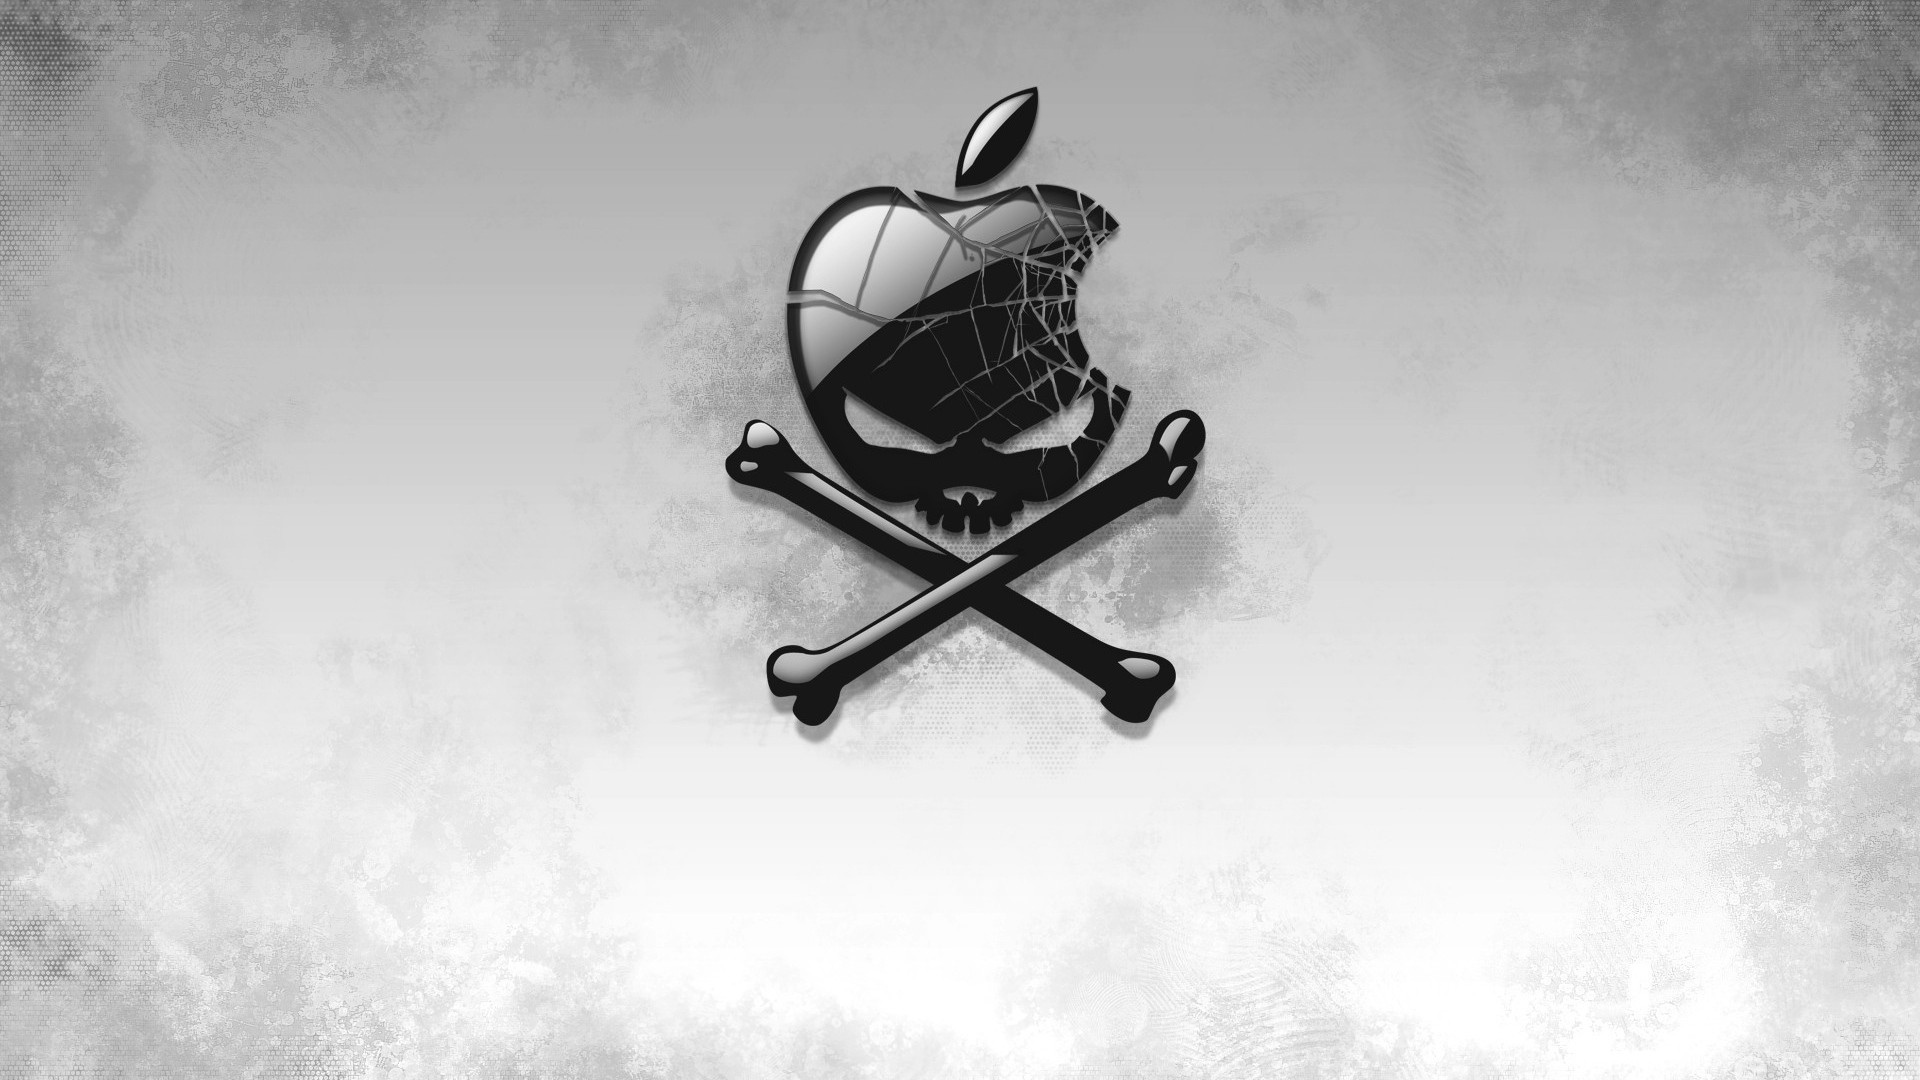 Background Full HD 1080p. Wallpaper black, apple, bones, skull